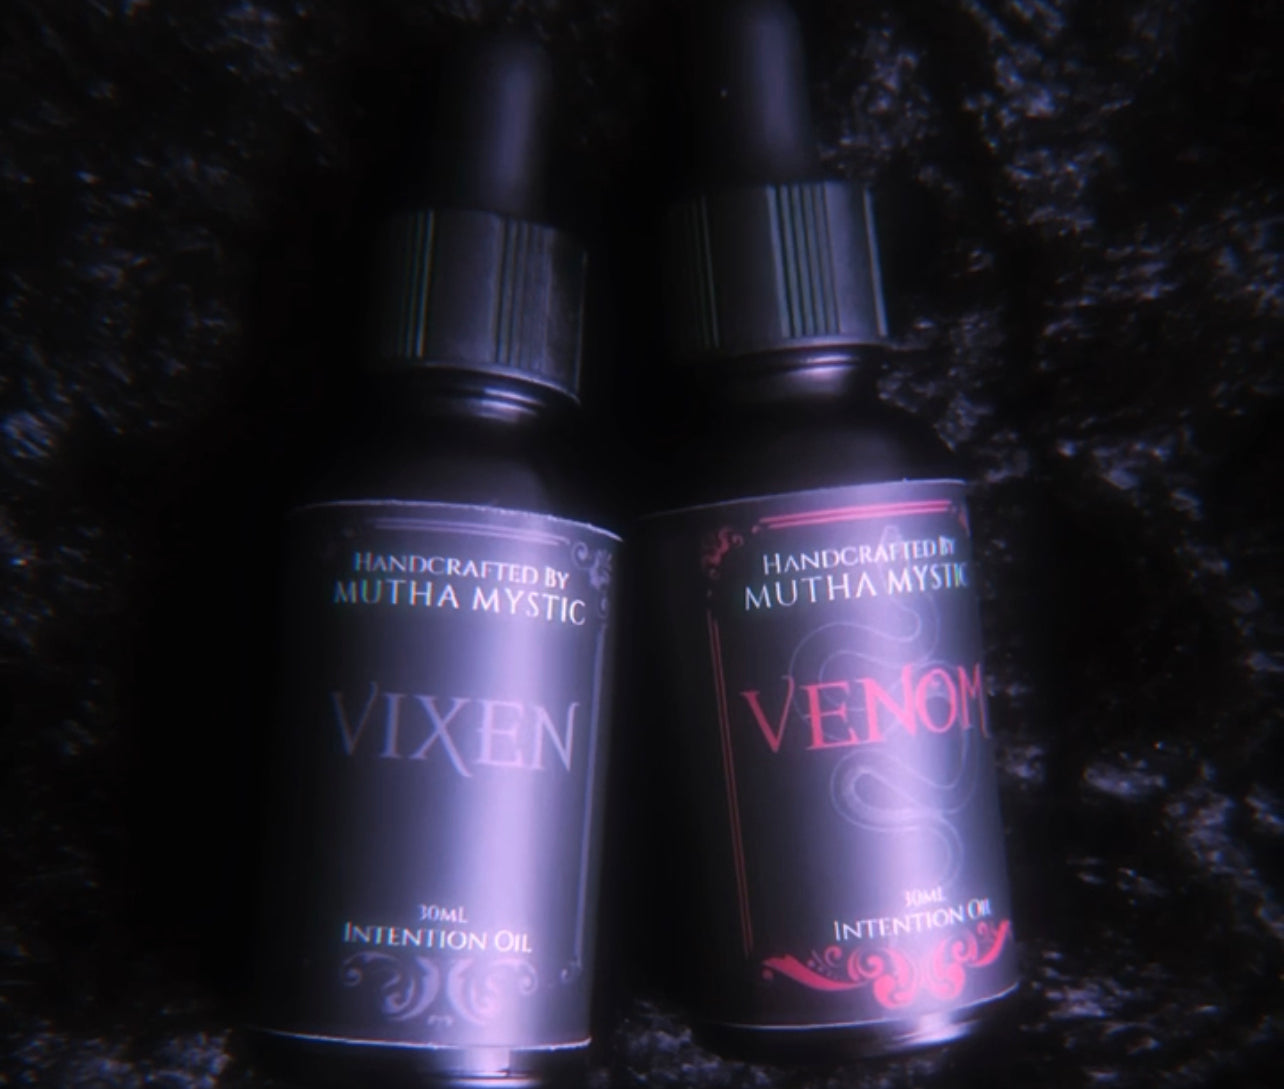 Vixen & Venom Scentual Bundle